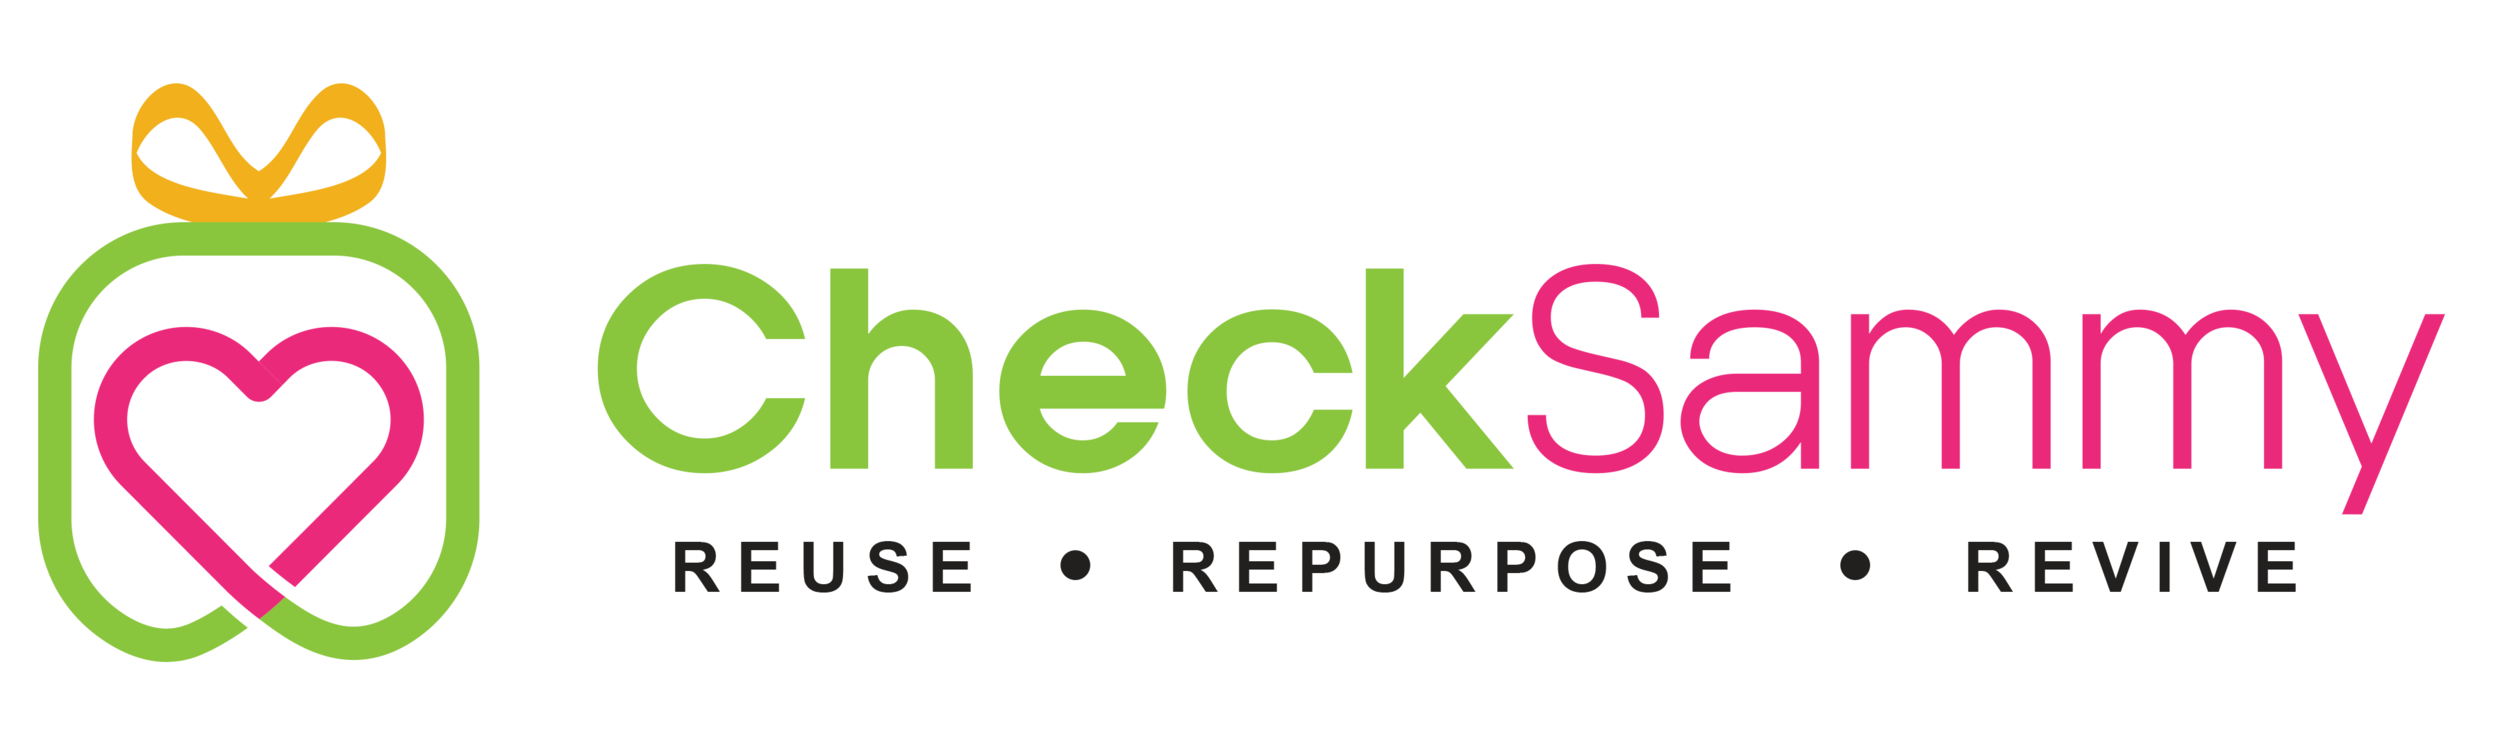 checksammy-eps-logo (1).png